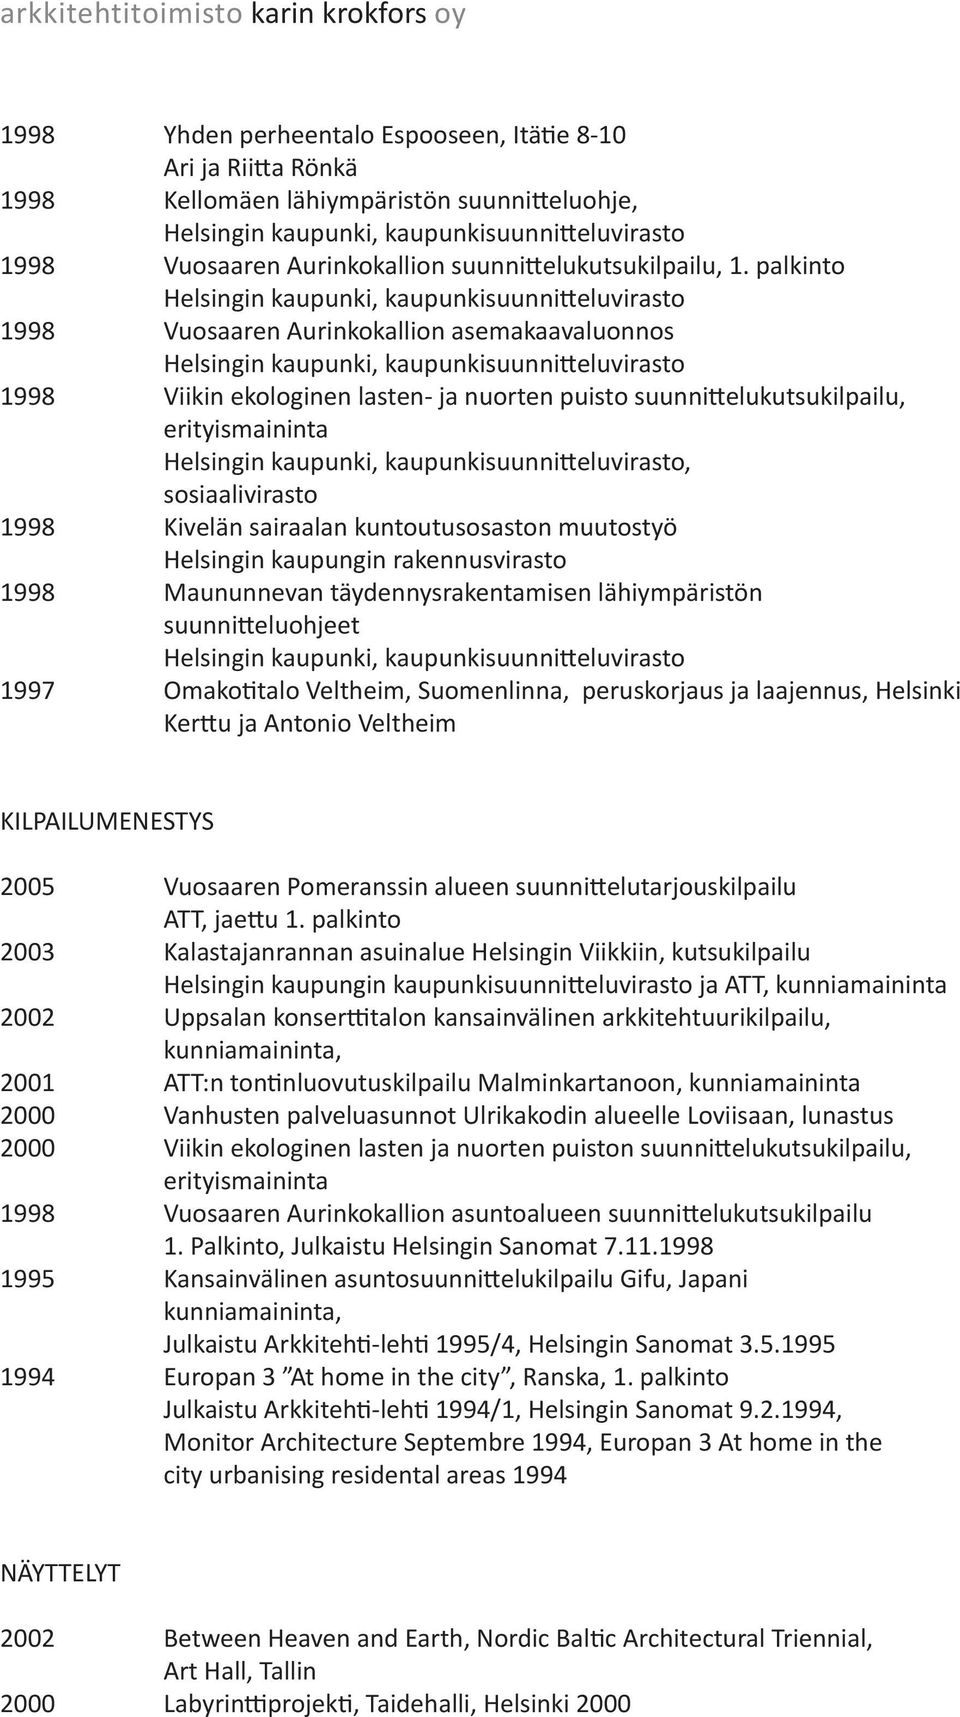 kuntoutusosaston muutostyö 1998 Maununnevan täydennysrakentamisen lähiympäristön suunnitteluohjeet 1997 Omakotitalo Veltheim, Suomenlinna, peruskorjaus ja laajennus, Helsinki Kerttu ja Antonio